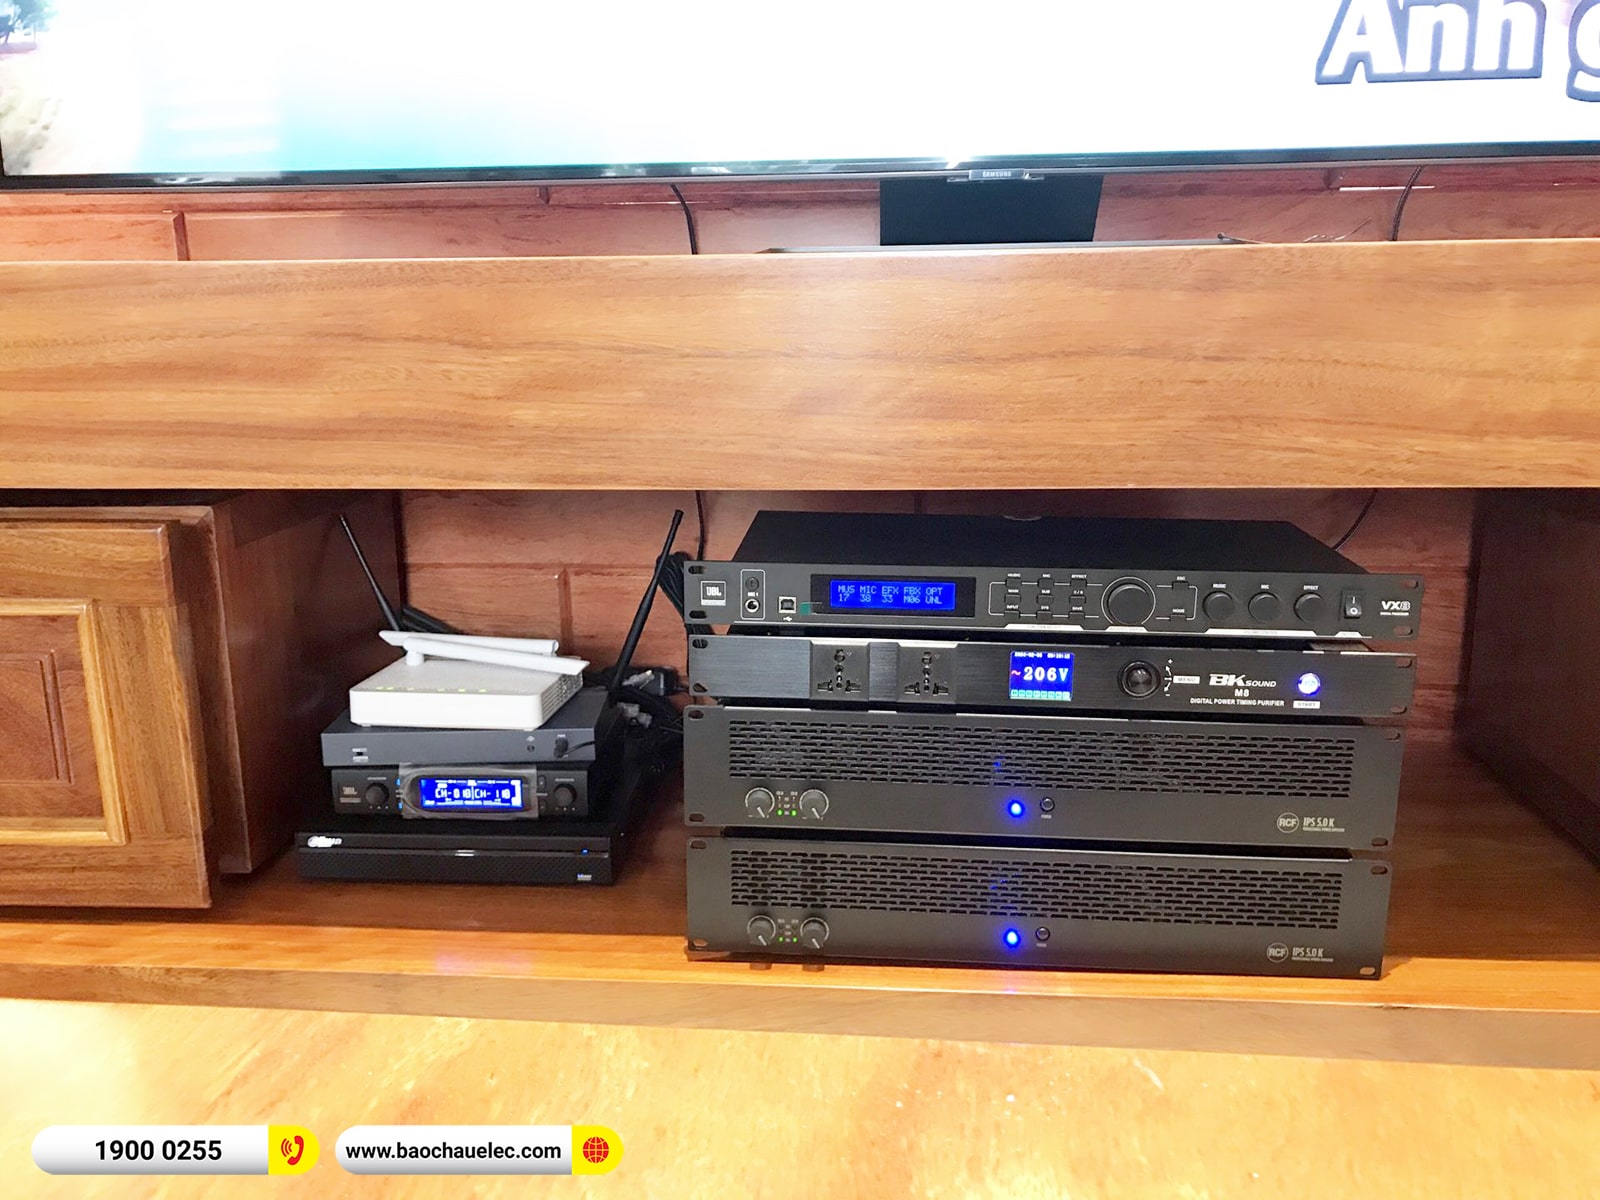 Lắp đặt dàn karaoke RCF hơn 253tr cho chị Hương tại Thái Bình (RCF C5215-99, IPS 5.0K, JBL VX8, S8018II, VM300,…)